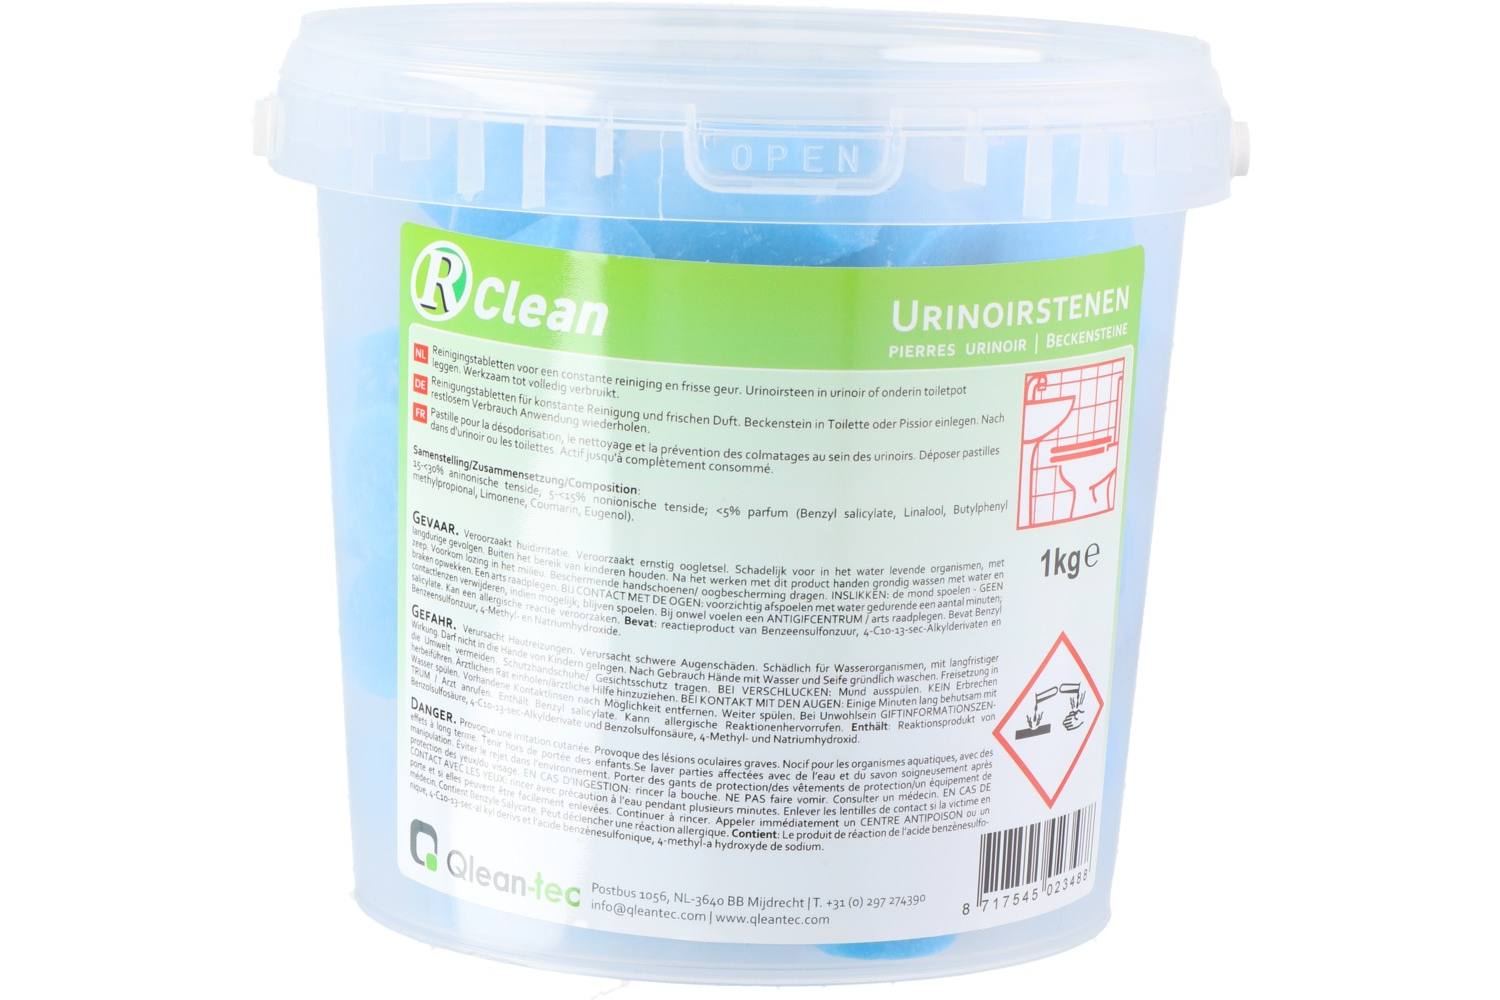 Urinoirstenen, Qlean-tec, 1kg 2